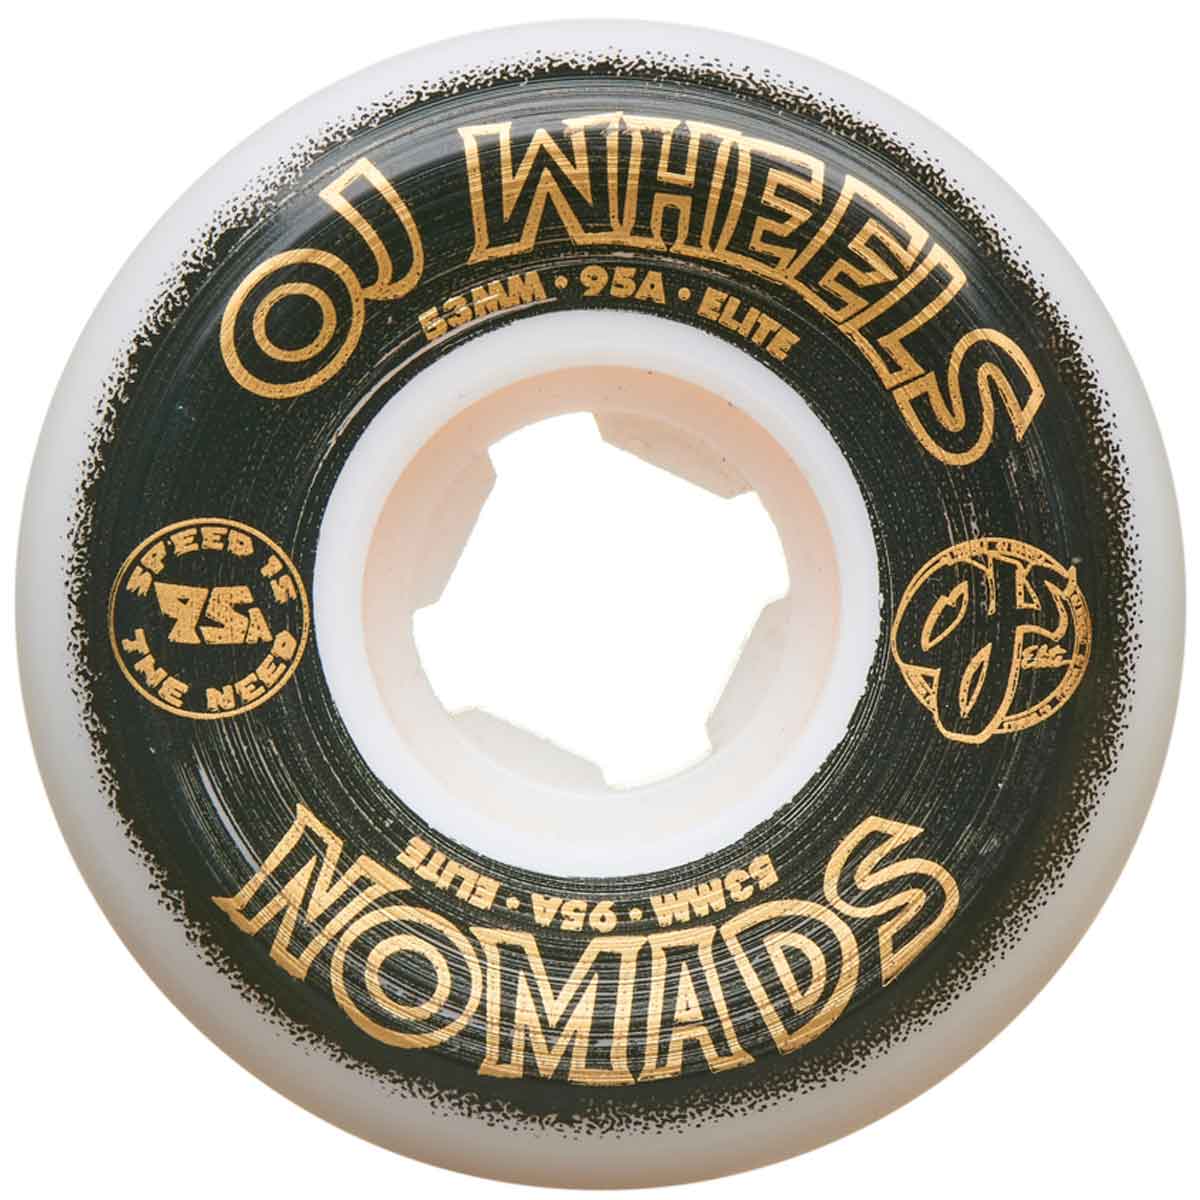 OJ Wheels Elite Nomads 95a Rollen - 53mm Rollen OJ Wheels 